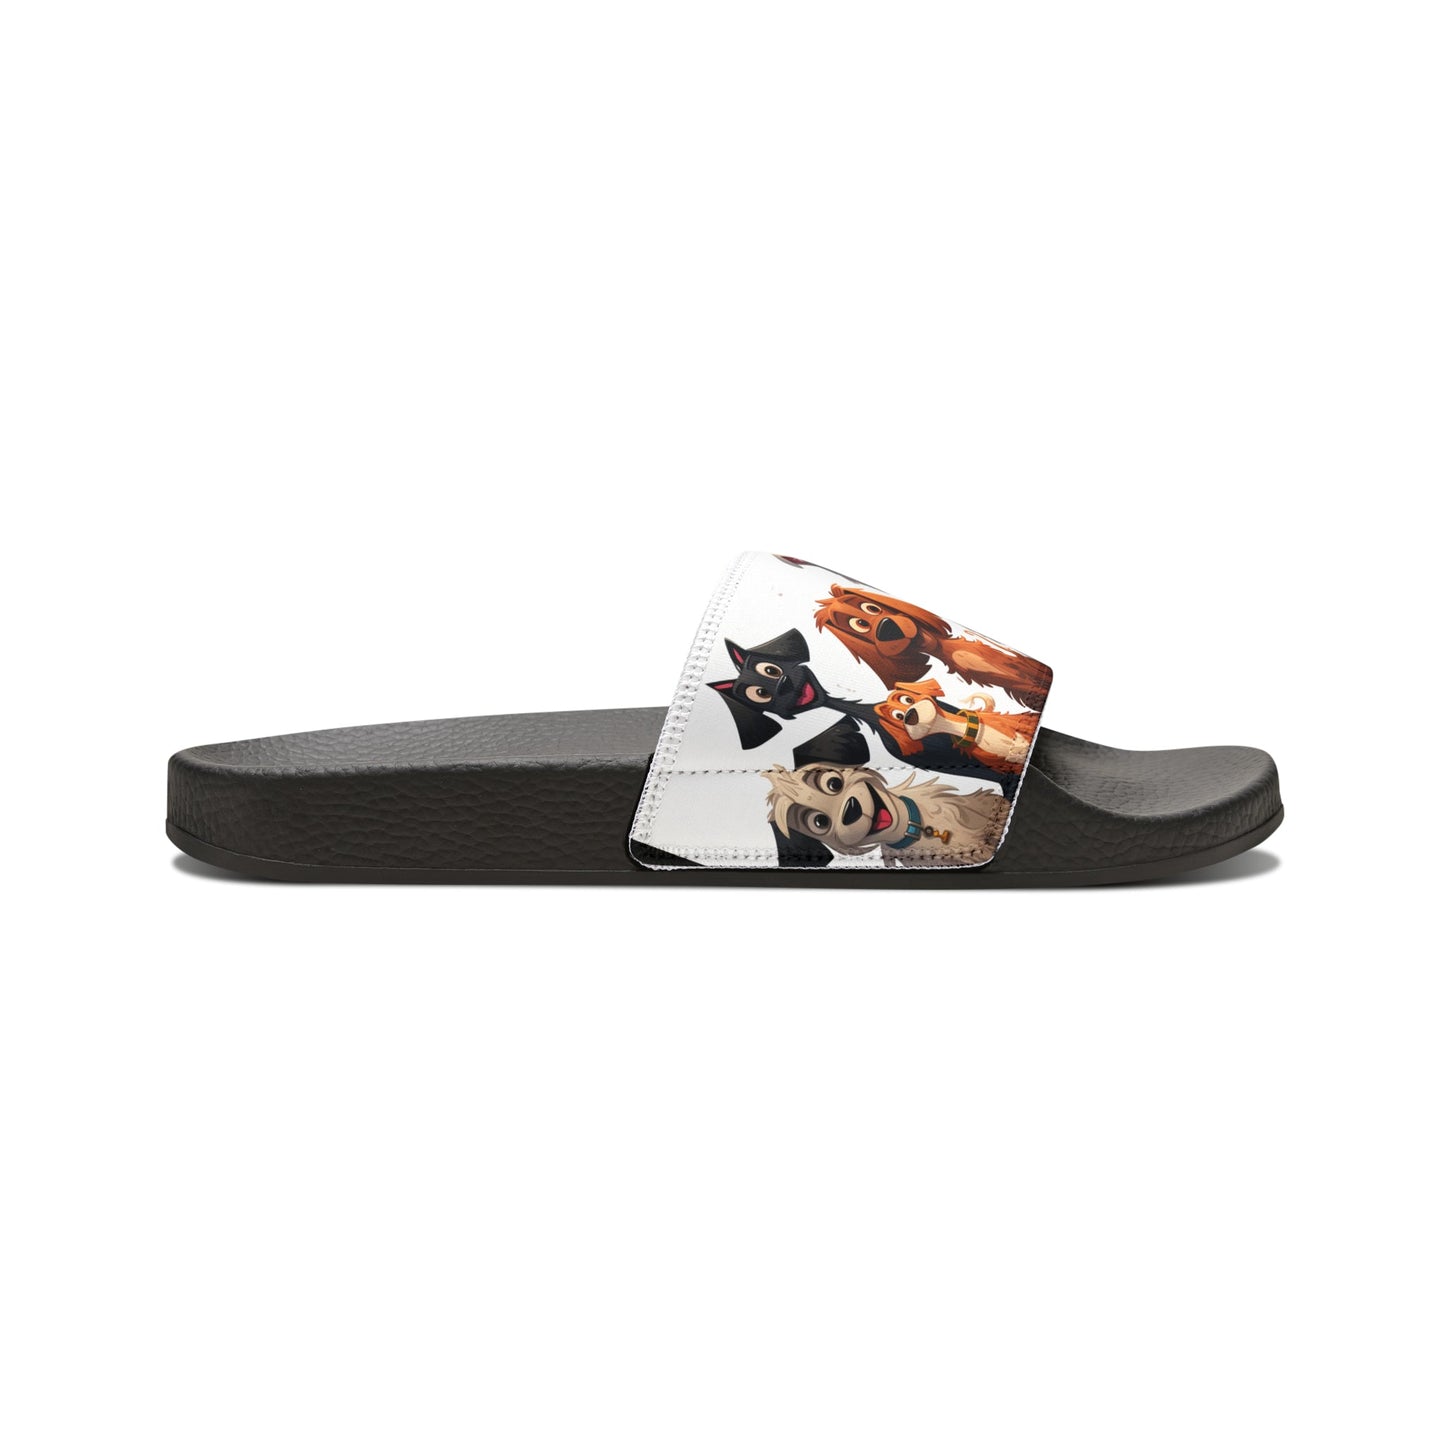 Dog Slide Sandals - Comfy Trendy Dog Slip on Shoes, Loveable Mutt Shoes, Womens Dog Sandals - FlooredByArt